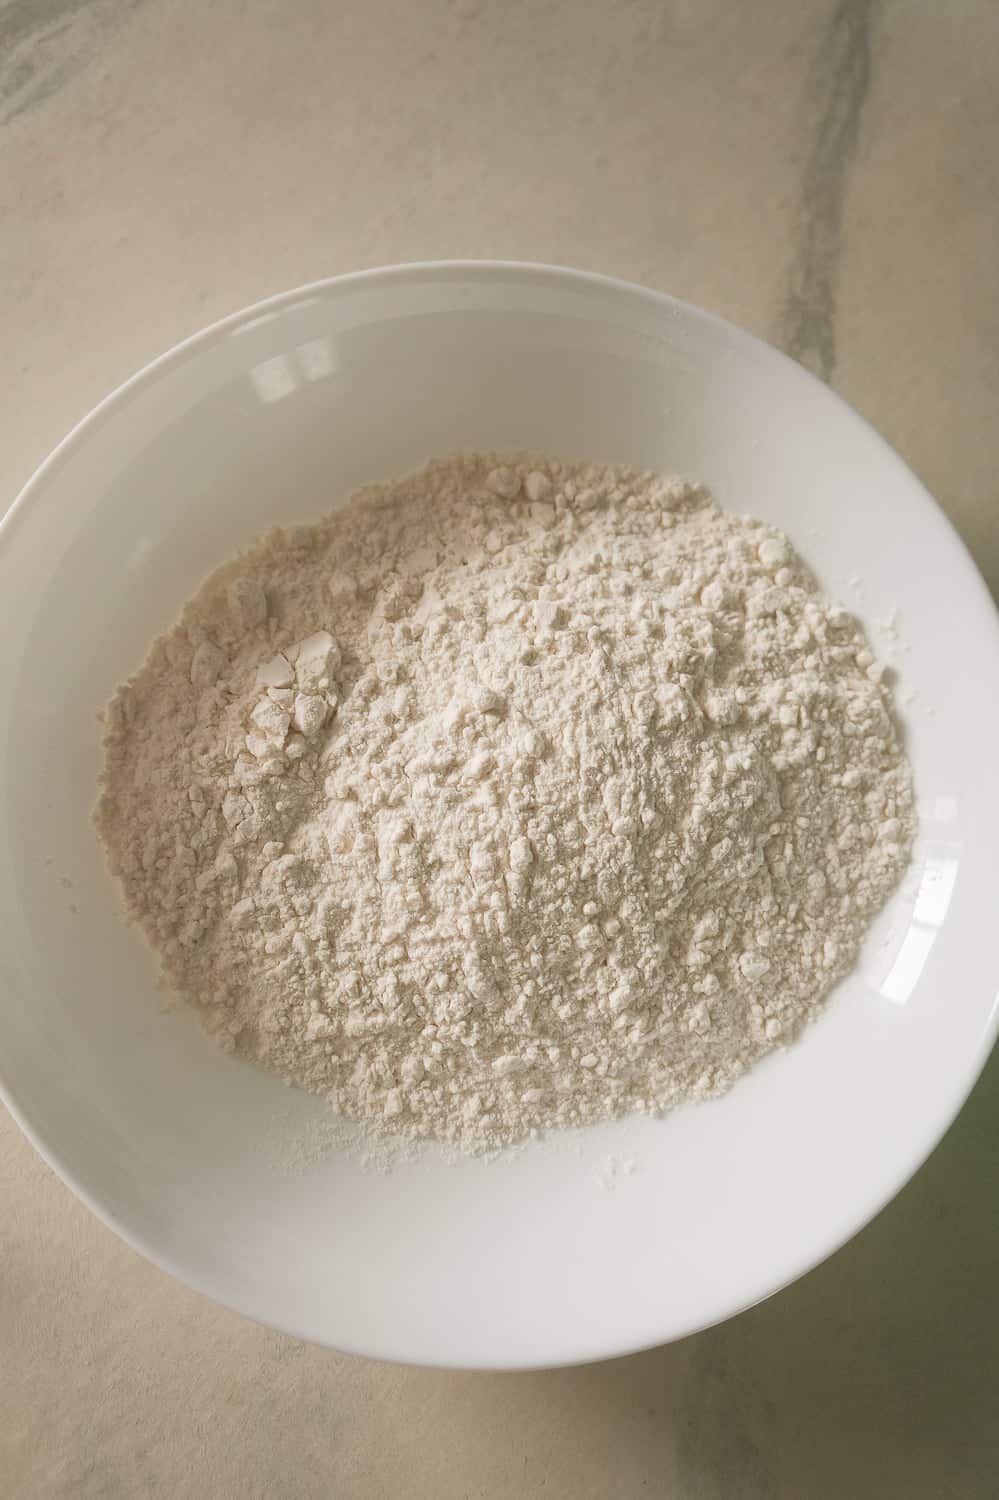 flour in a white bowl